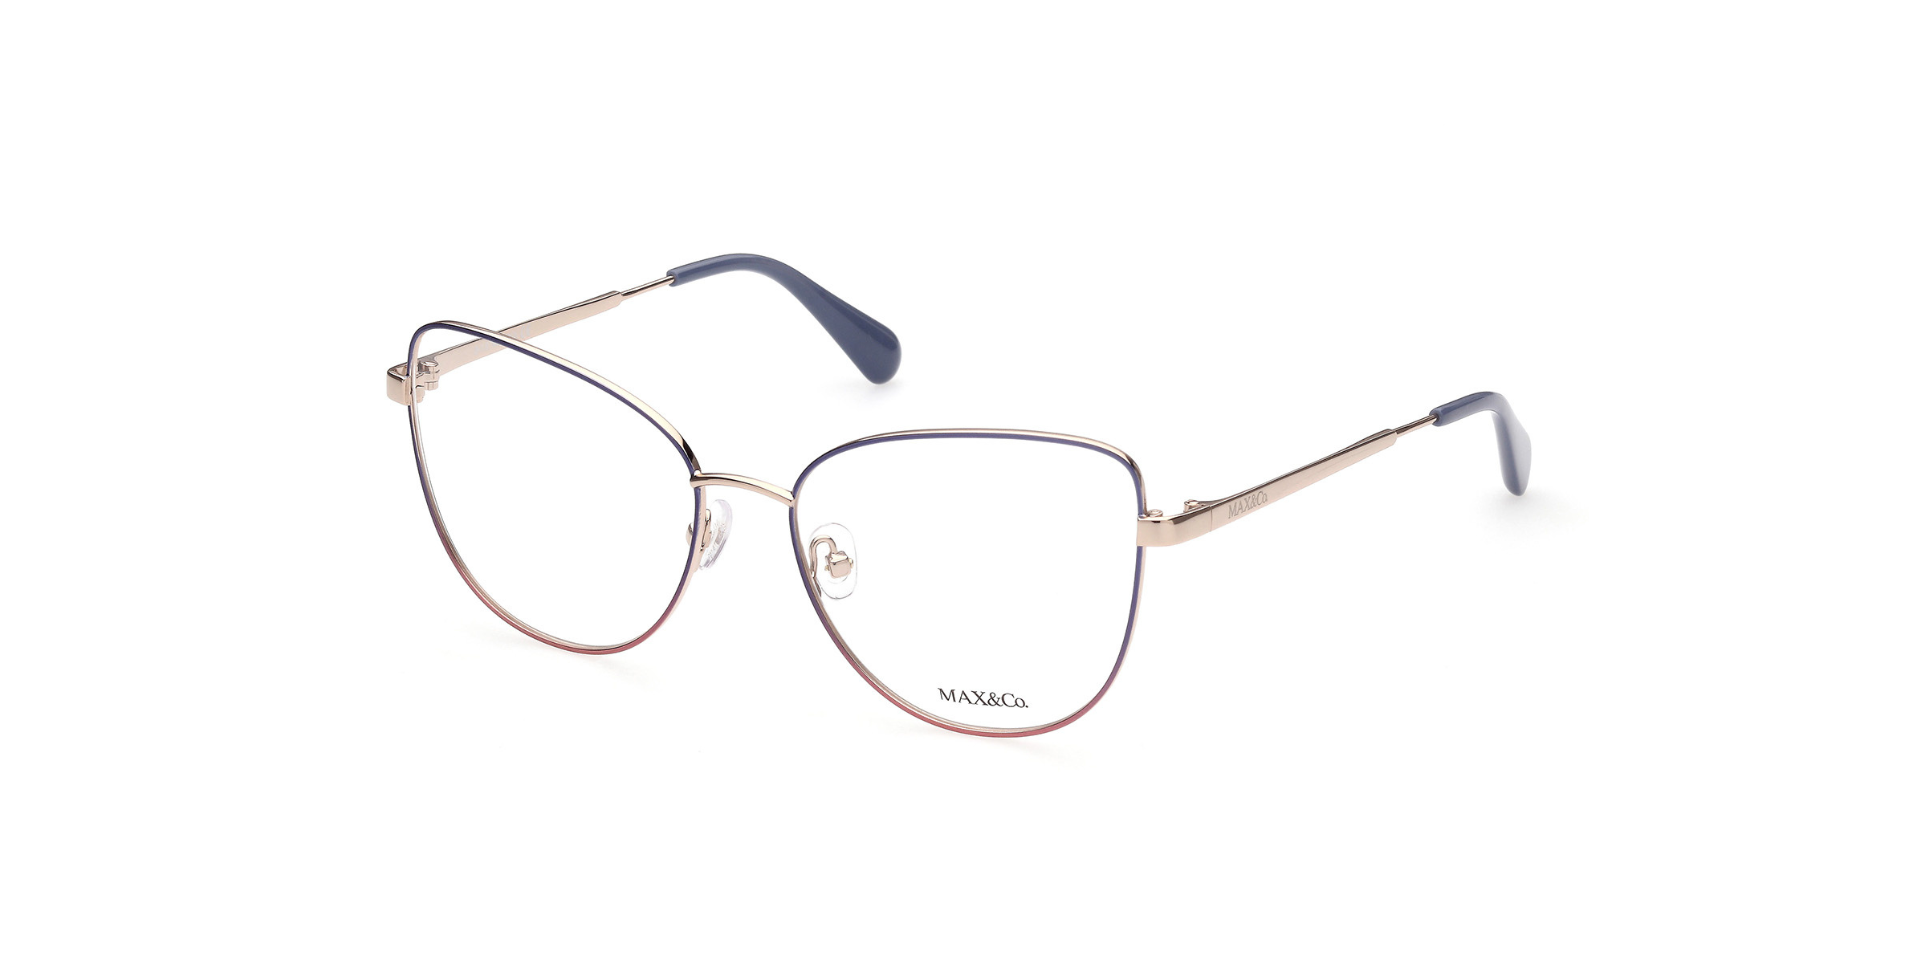 Óculos de Grau Feminino Max&Co. MO 5018 - Foto 1